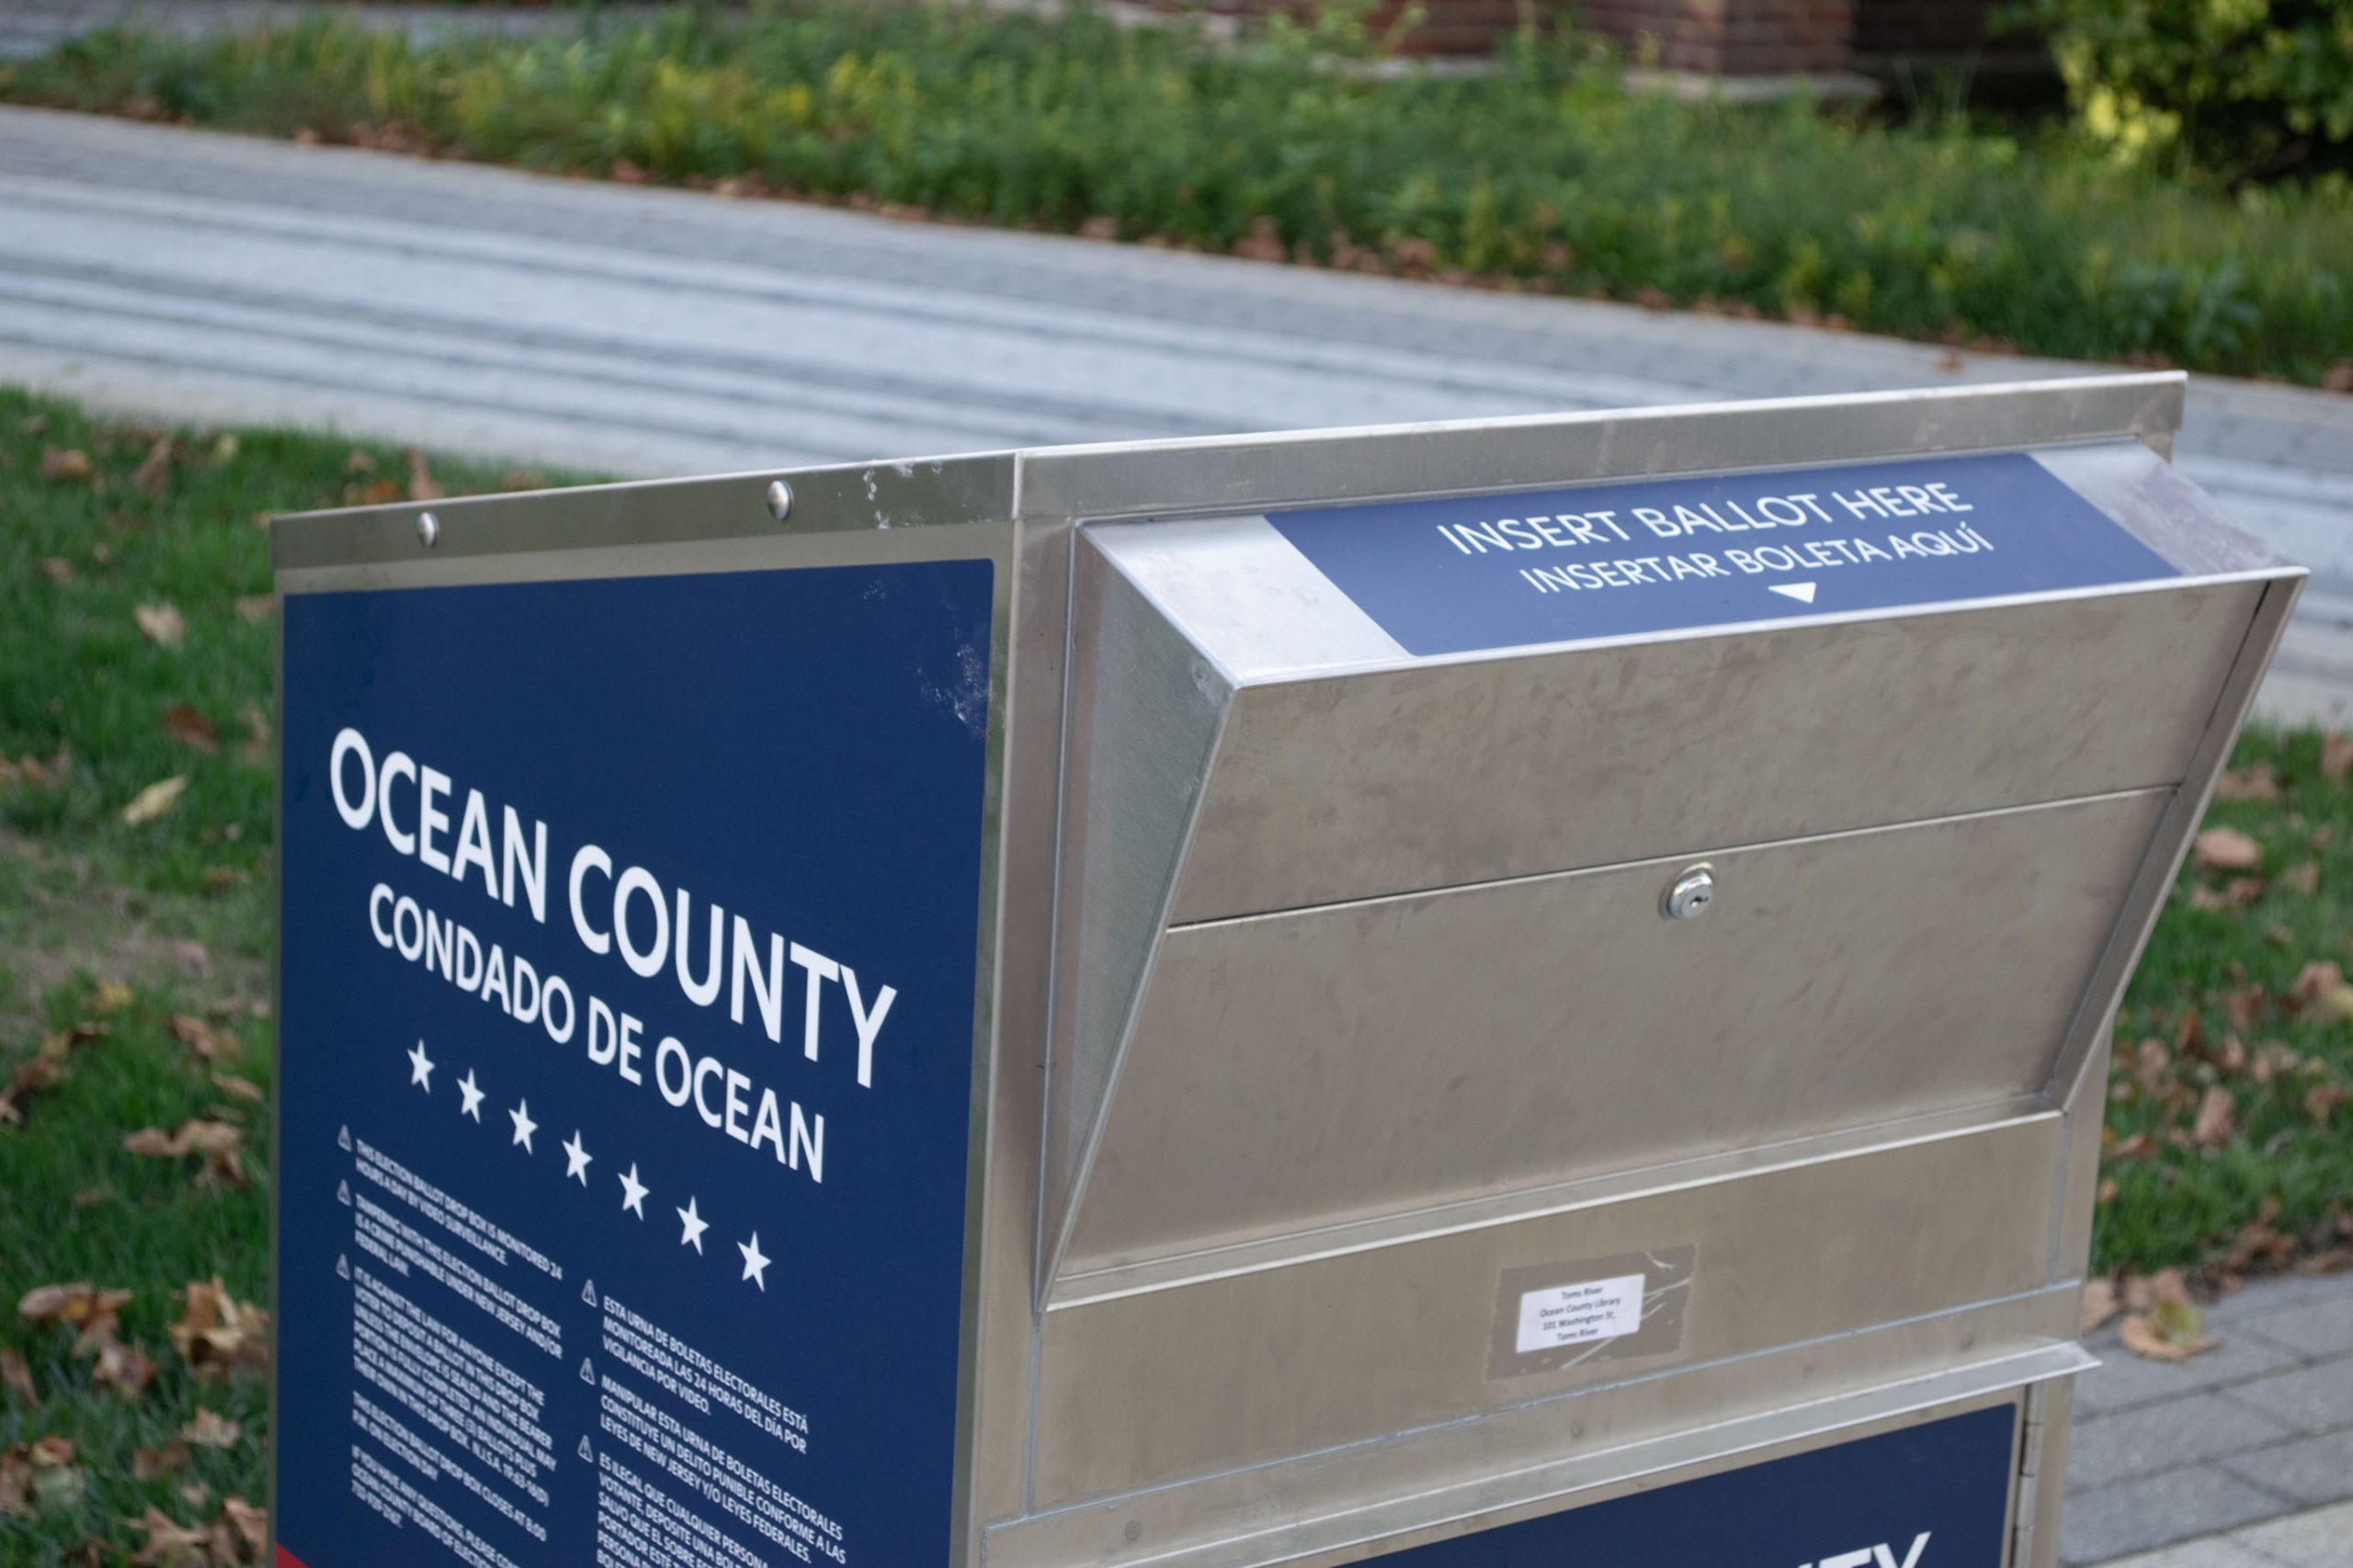 An Ocean County ballot drop box for the 2020 election. (Photo: Daniel Nee)